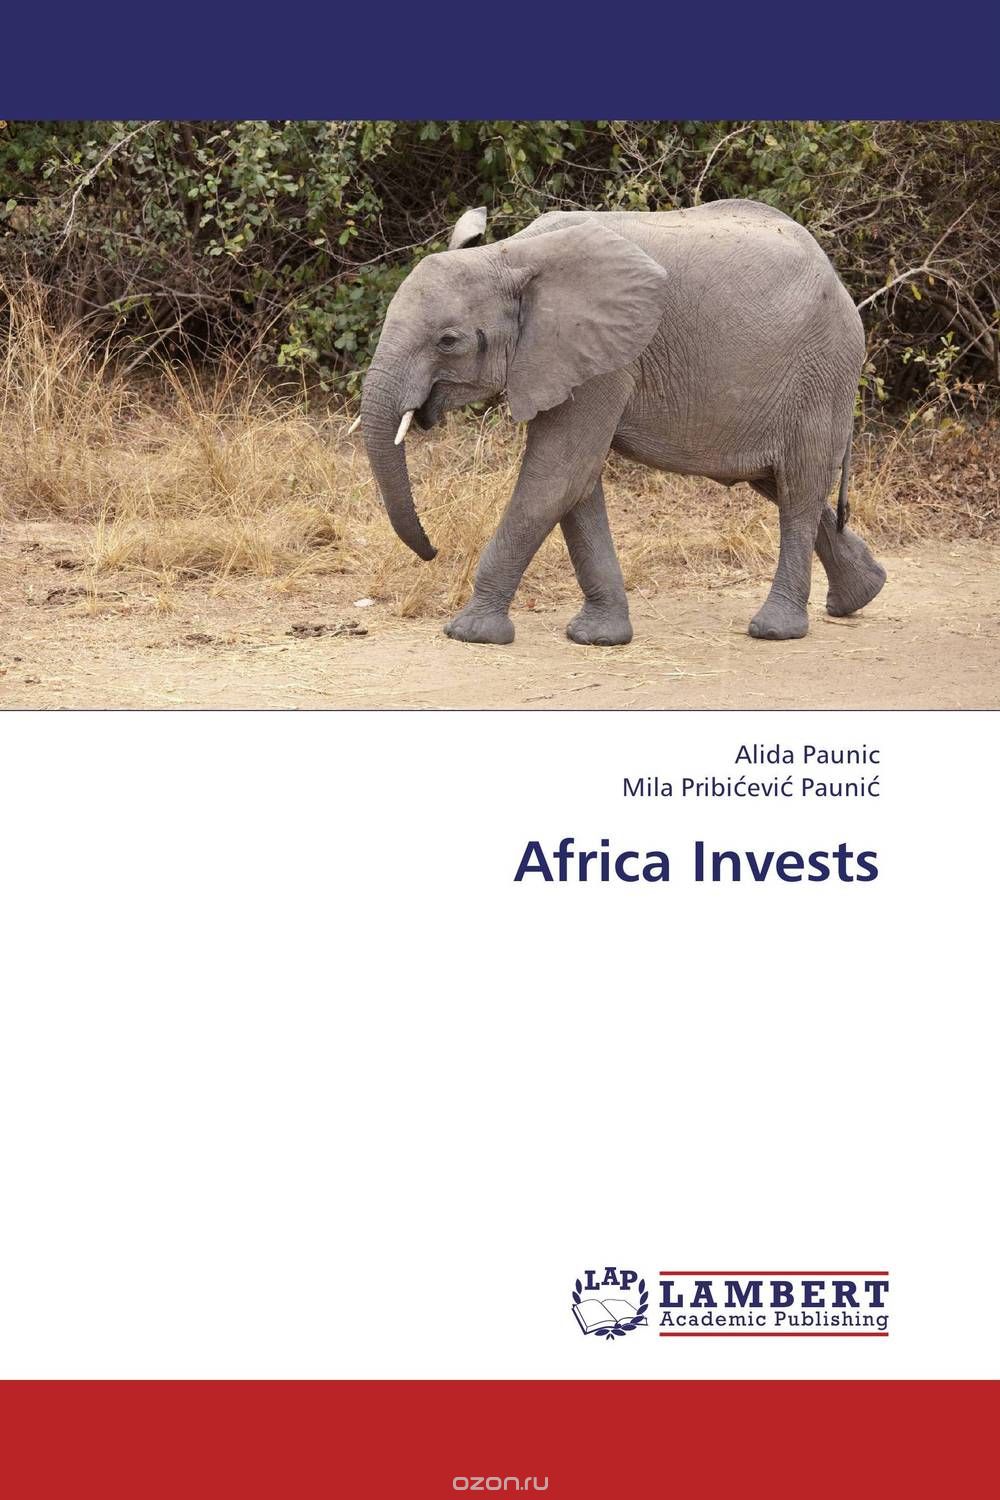 Скачать книгу "Africa Invests"